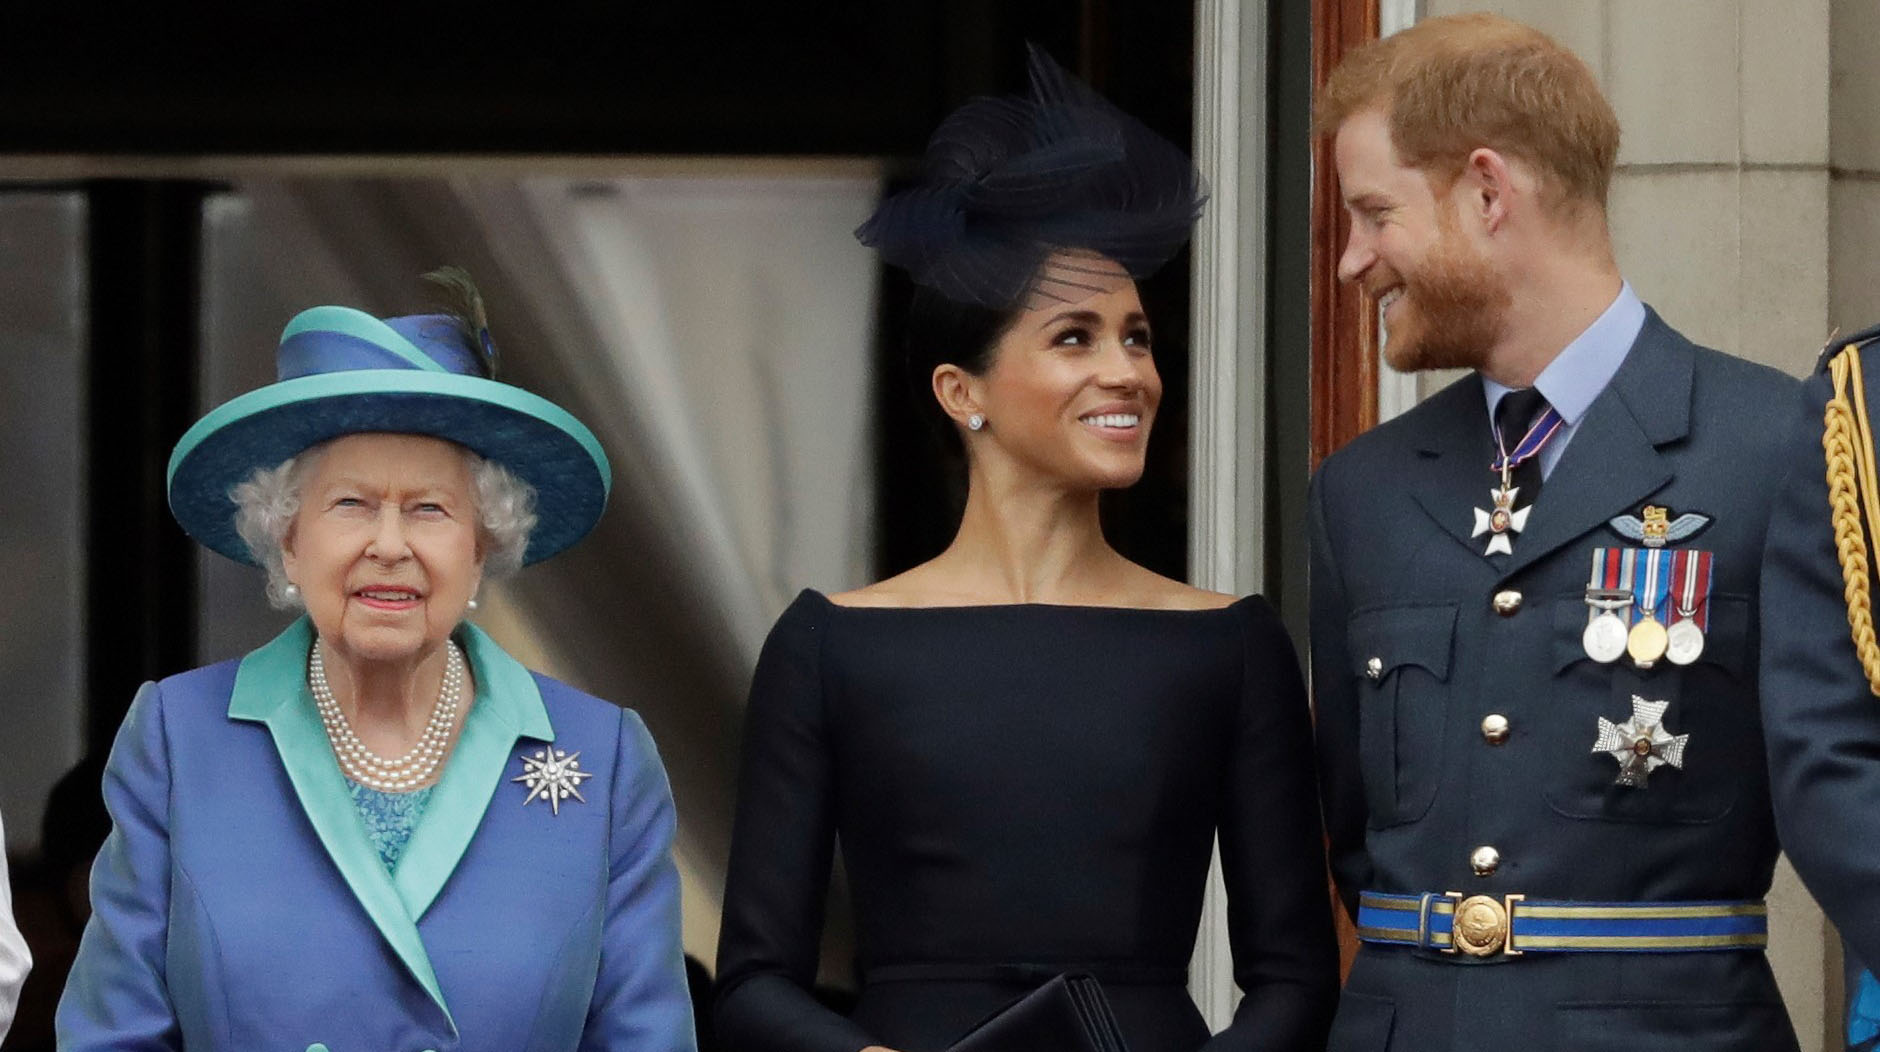 La Reina Isabel II, Meghan, la duquesa de Sussex, y el príncipe Harry durante un evento real en 2018. (Foto: AP/Matt Dunham)